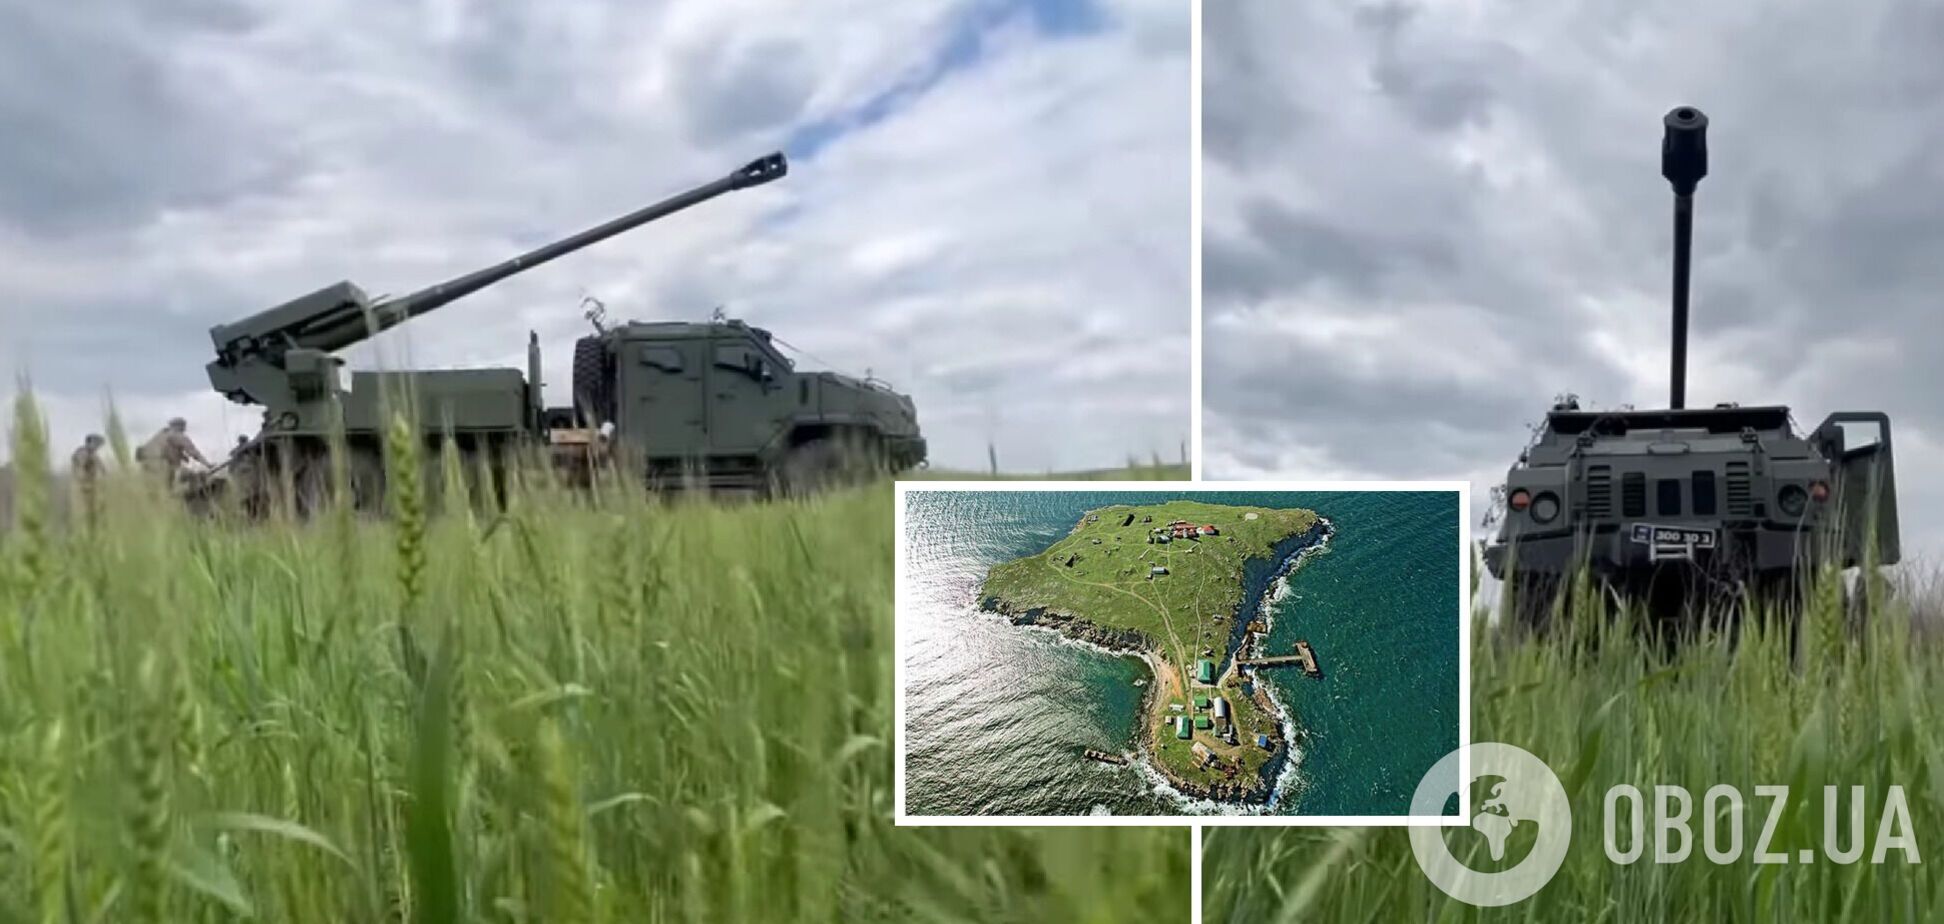 'Випустили 48 снарядів': механік 'Богдани' розповів про участь у звільненні острова Зміїний. Відео